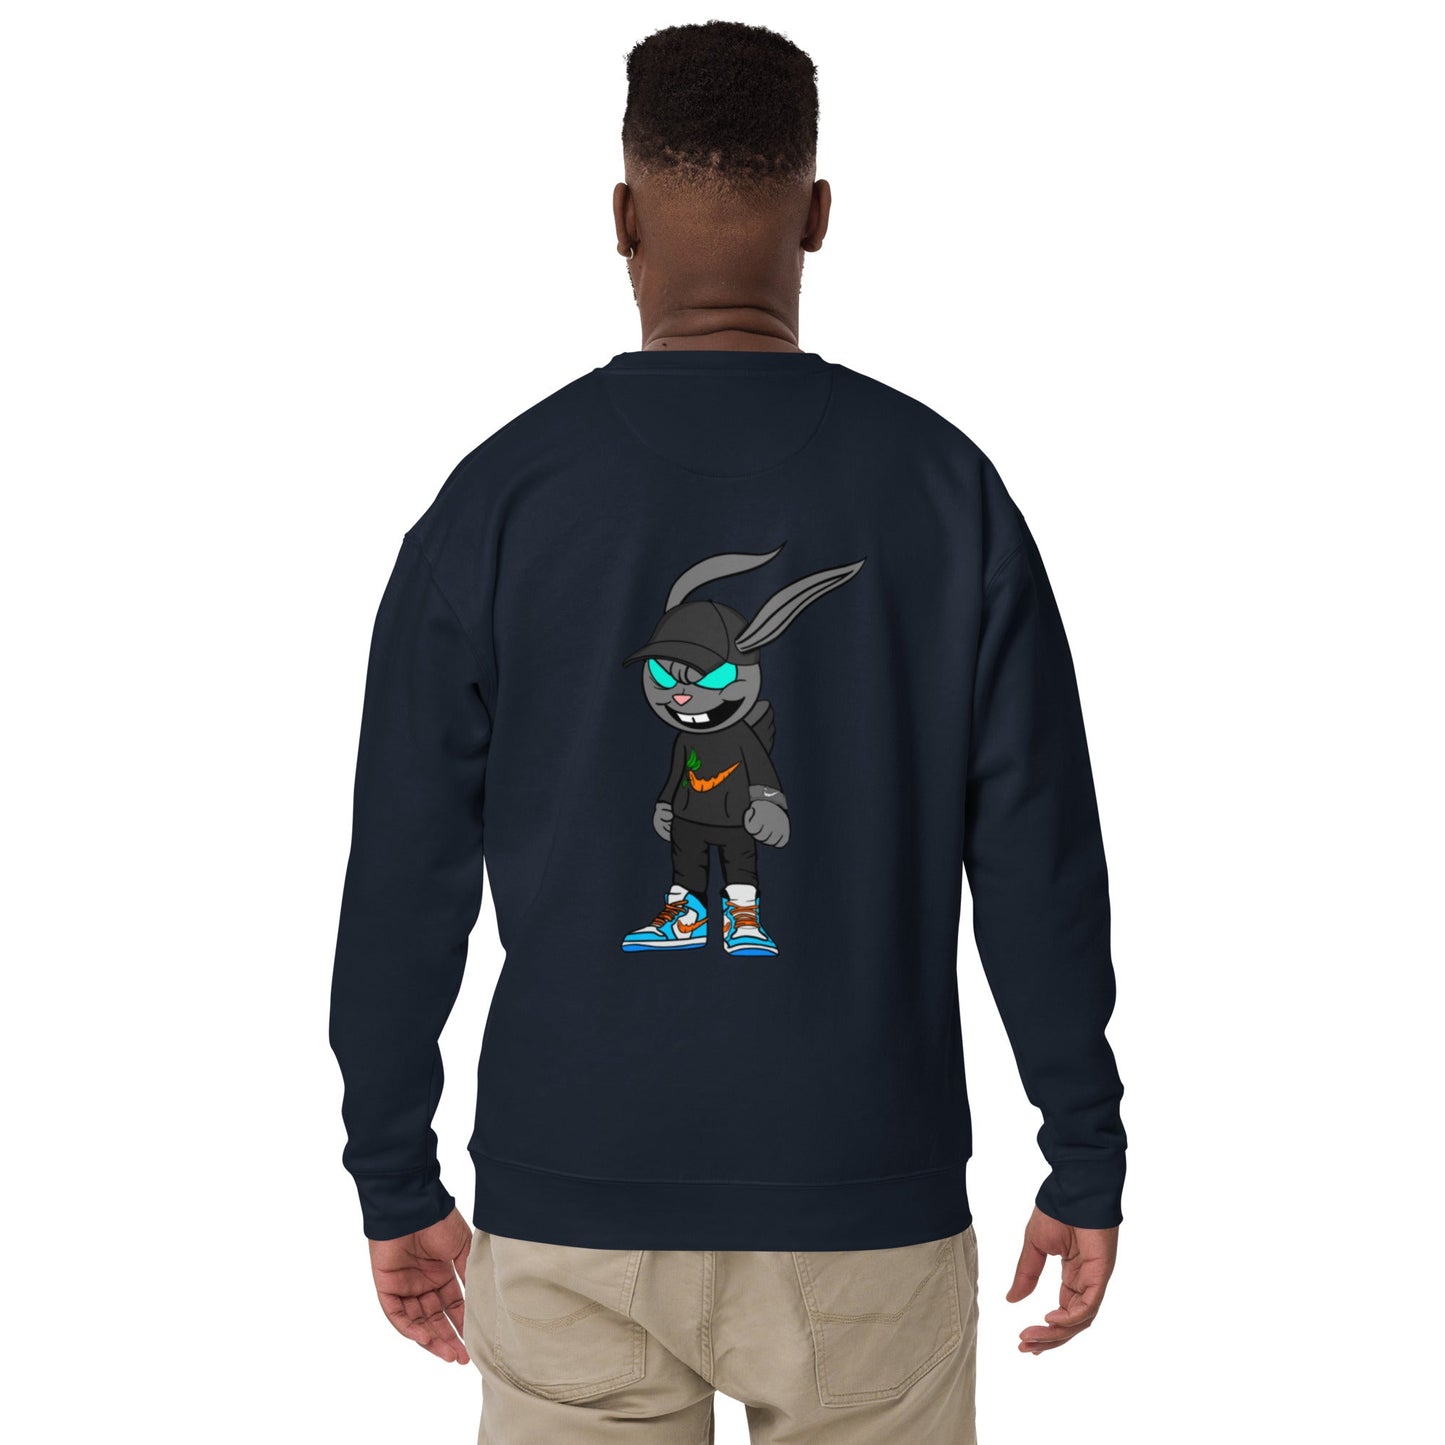 ASH Style 4 Sweatshirt